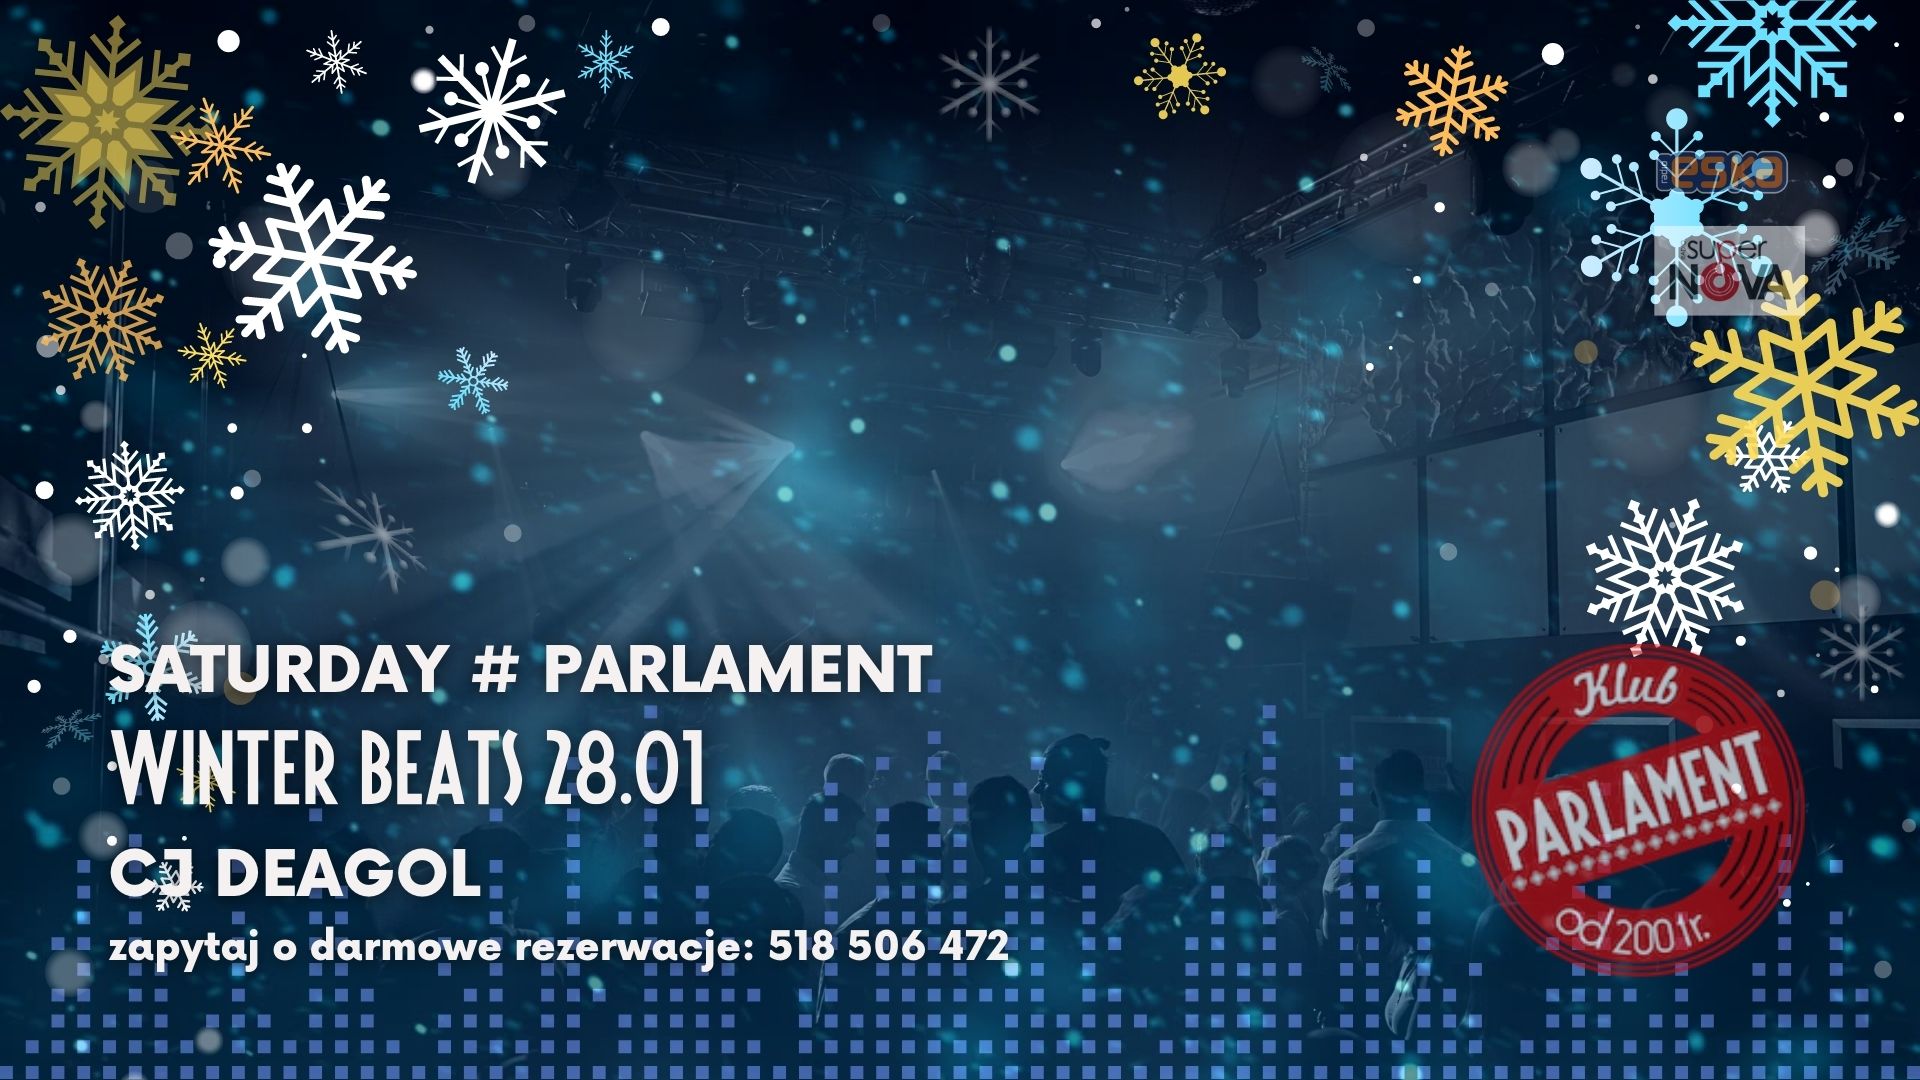 Saturday # Parlament | Winter Beats | 28.01 | Cj Deagol